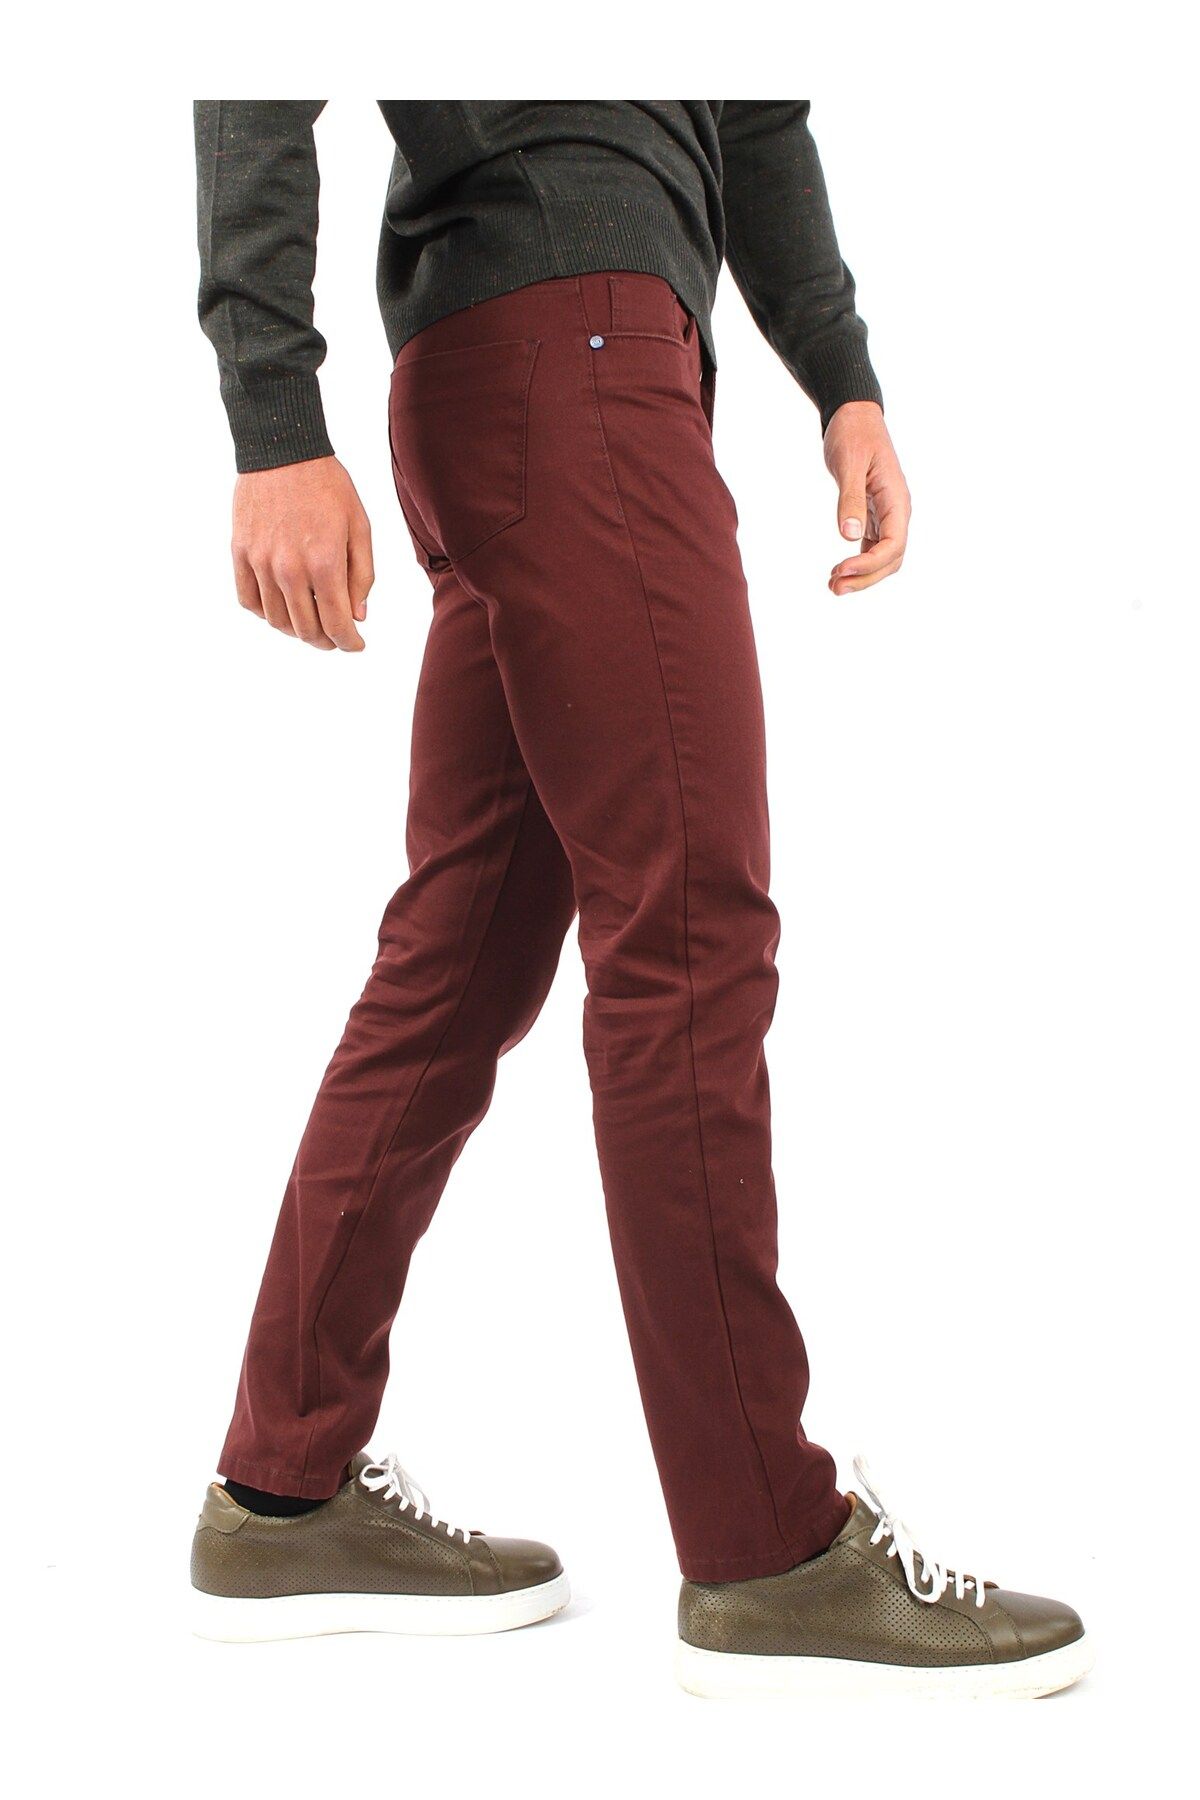 Dufy Bordo Erkek Regular Fit Düz Kanvas Pantolon - 32104